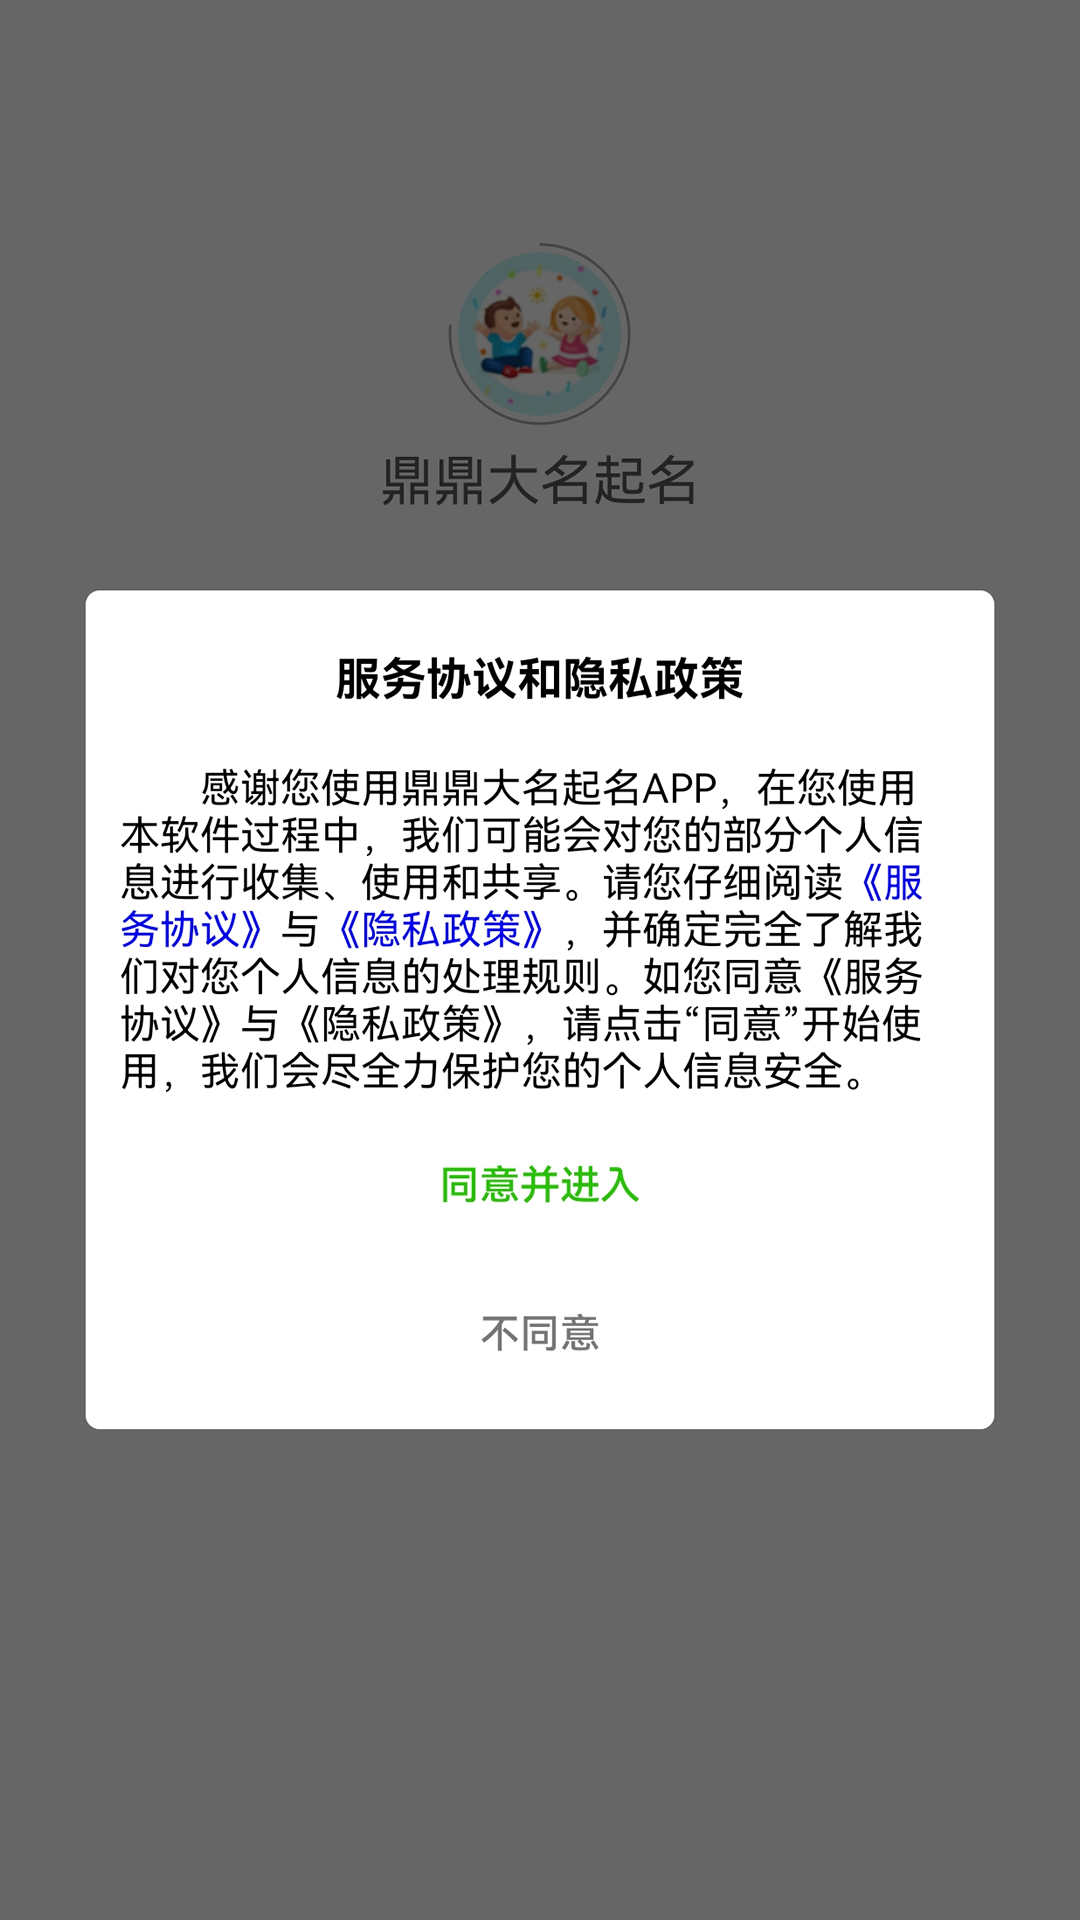 鼎鼎大名起名app下载,鼎鼎大名起名app官方版 v1.0.3